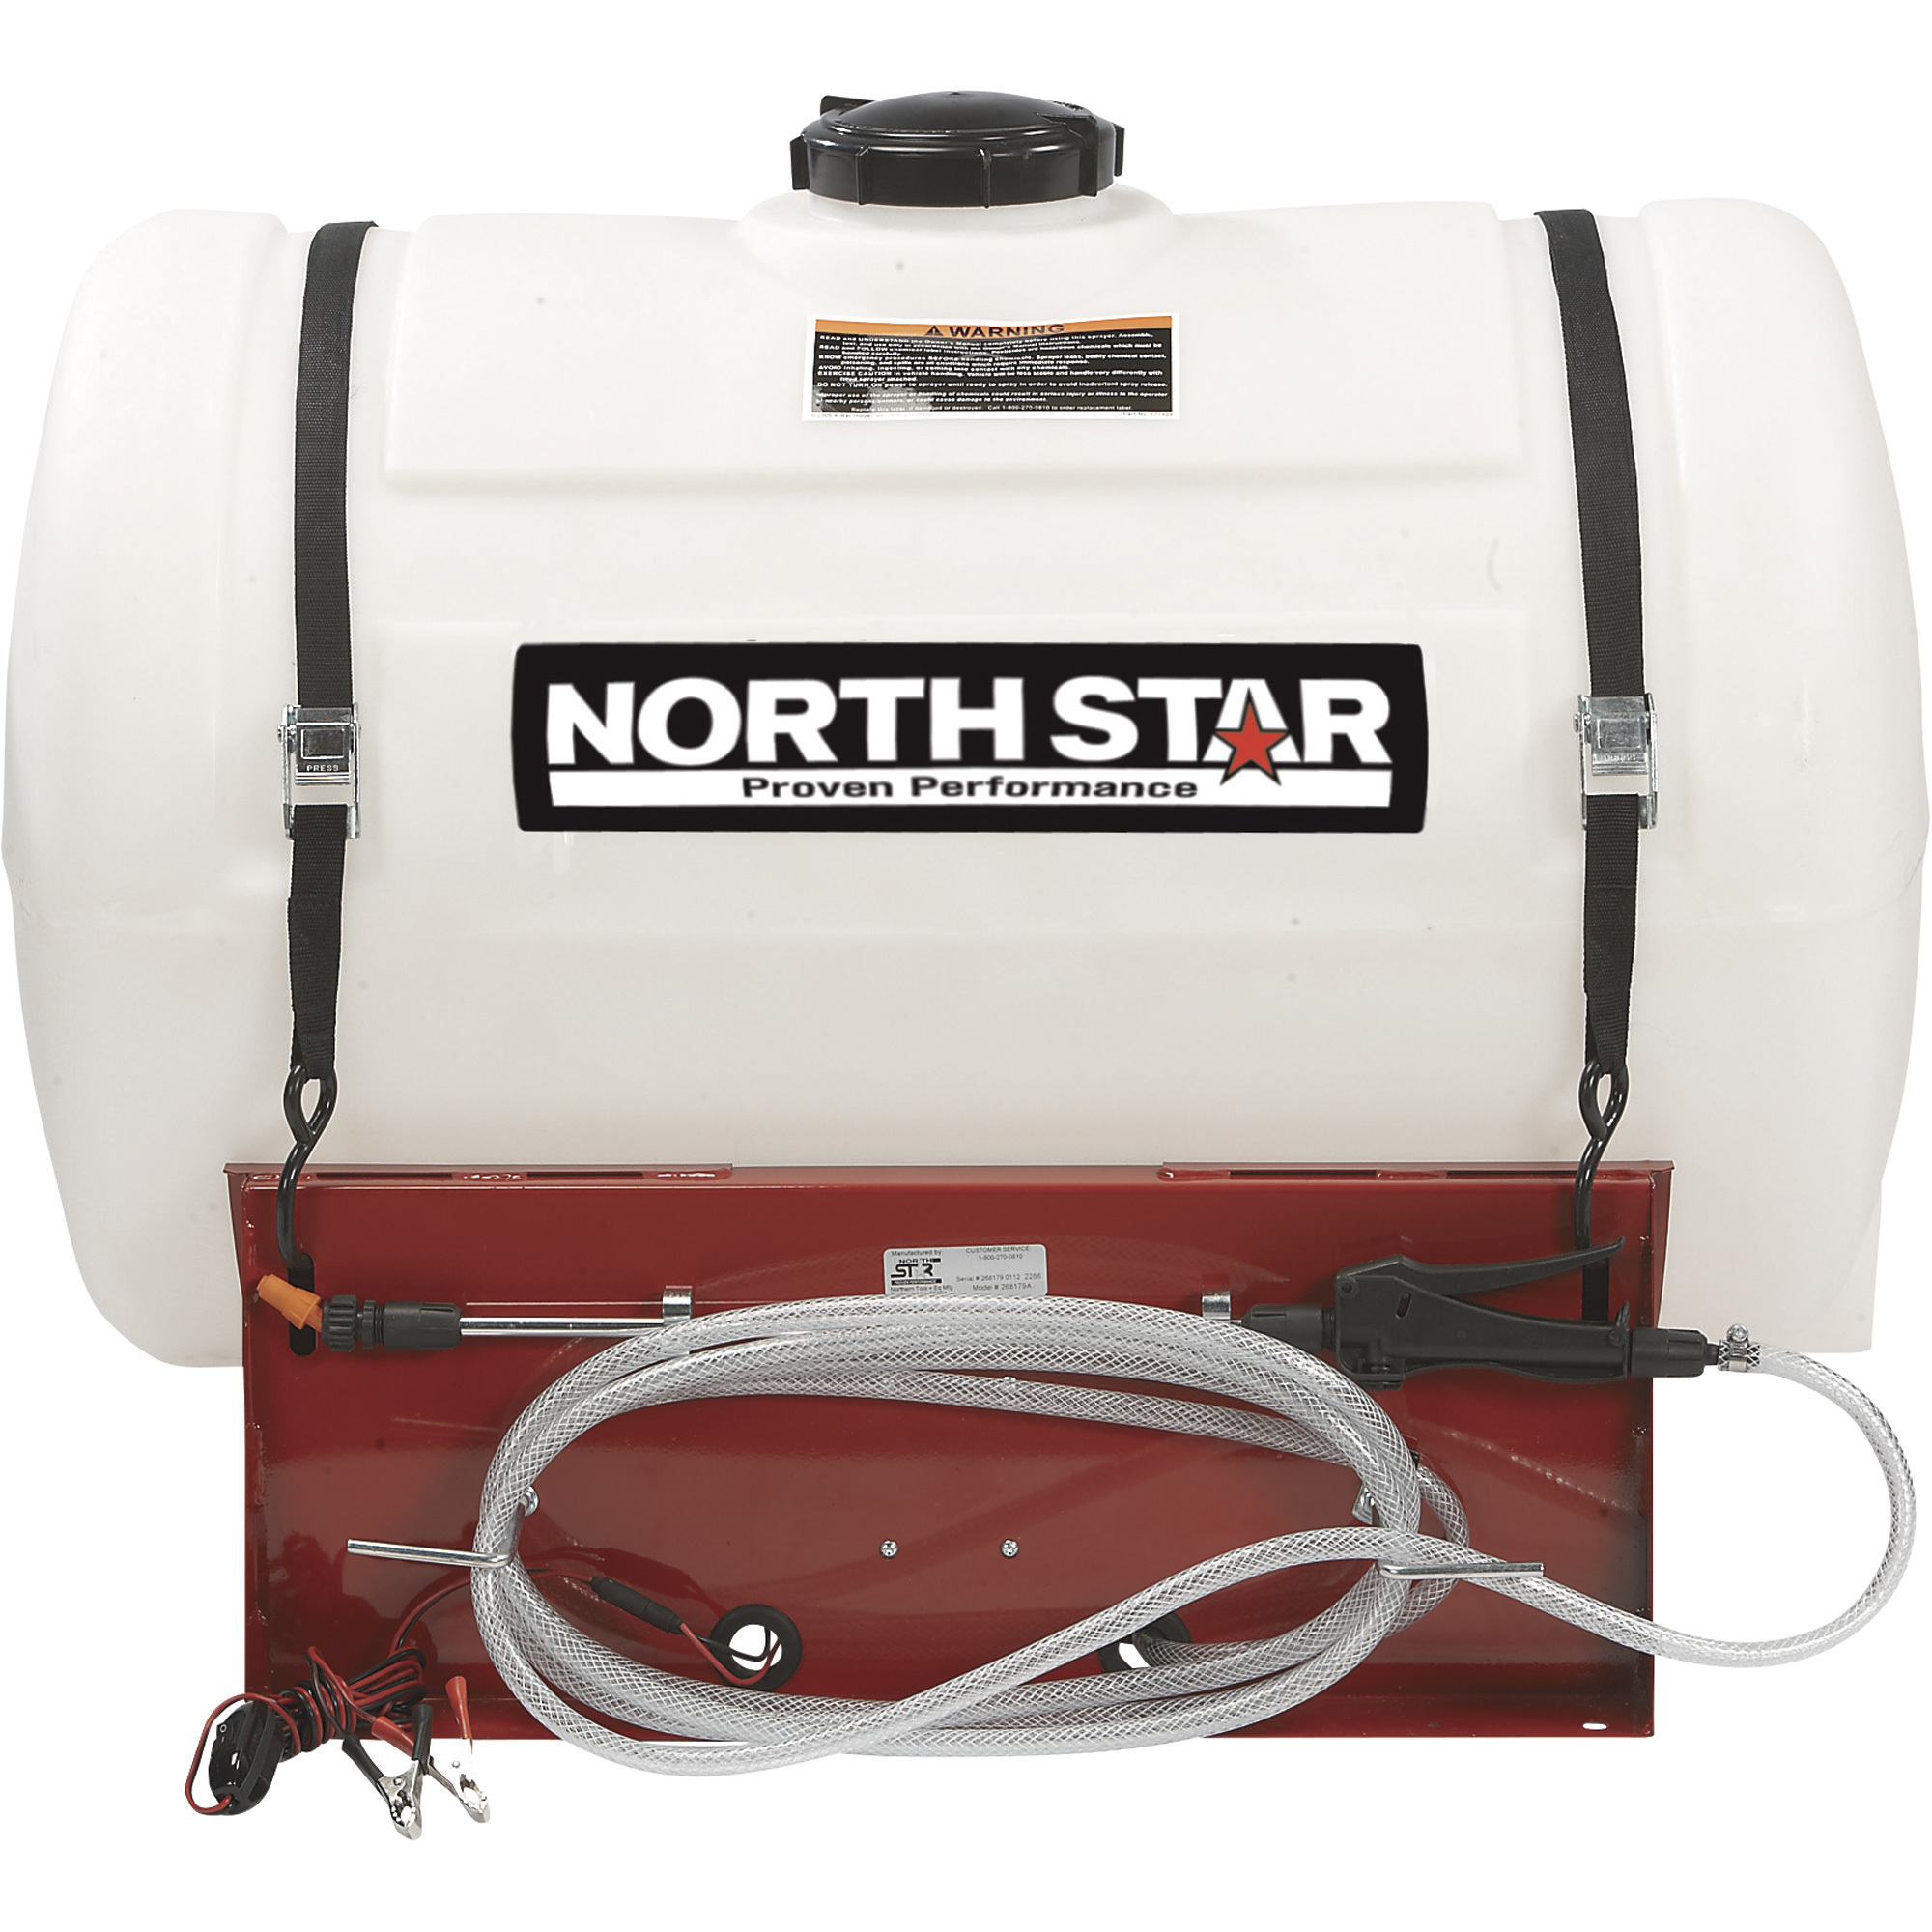 NorthStar UTV Spot Sprayer, 55-Gallon Capacity, 2.2 GPM, 12 Volt